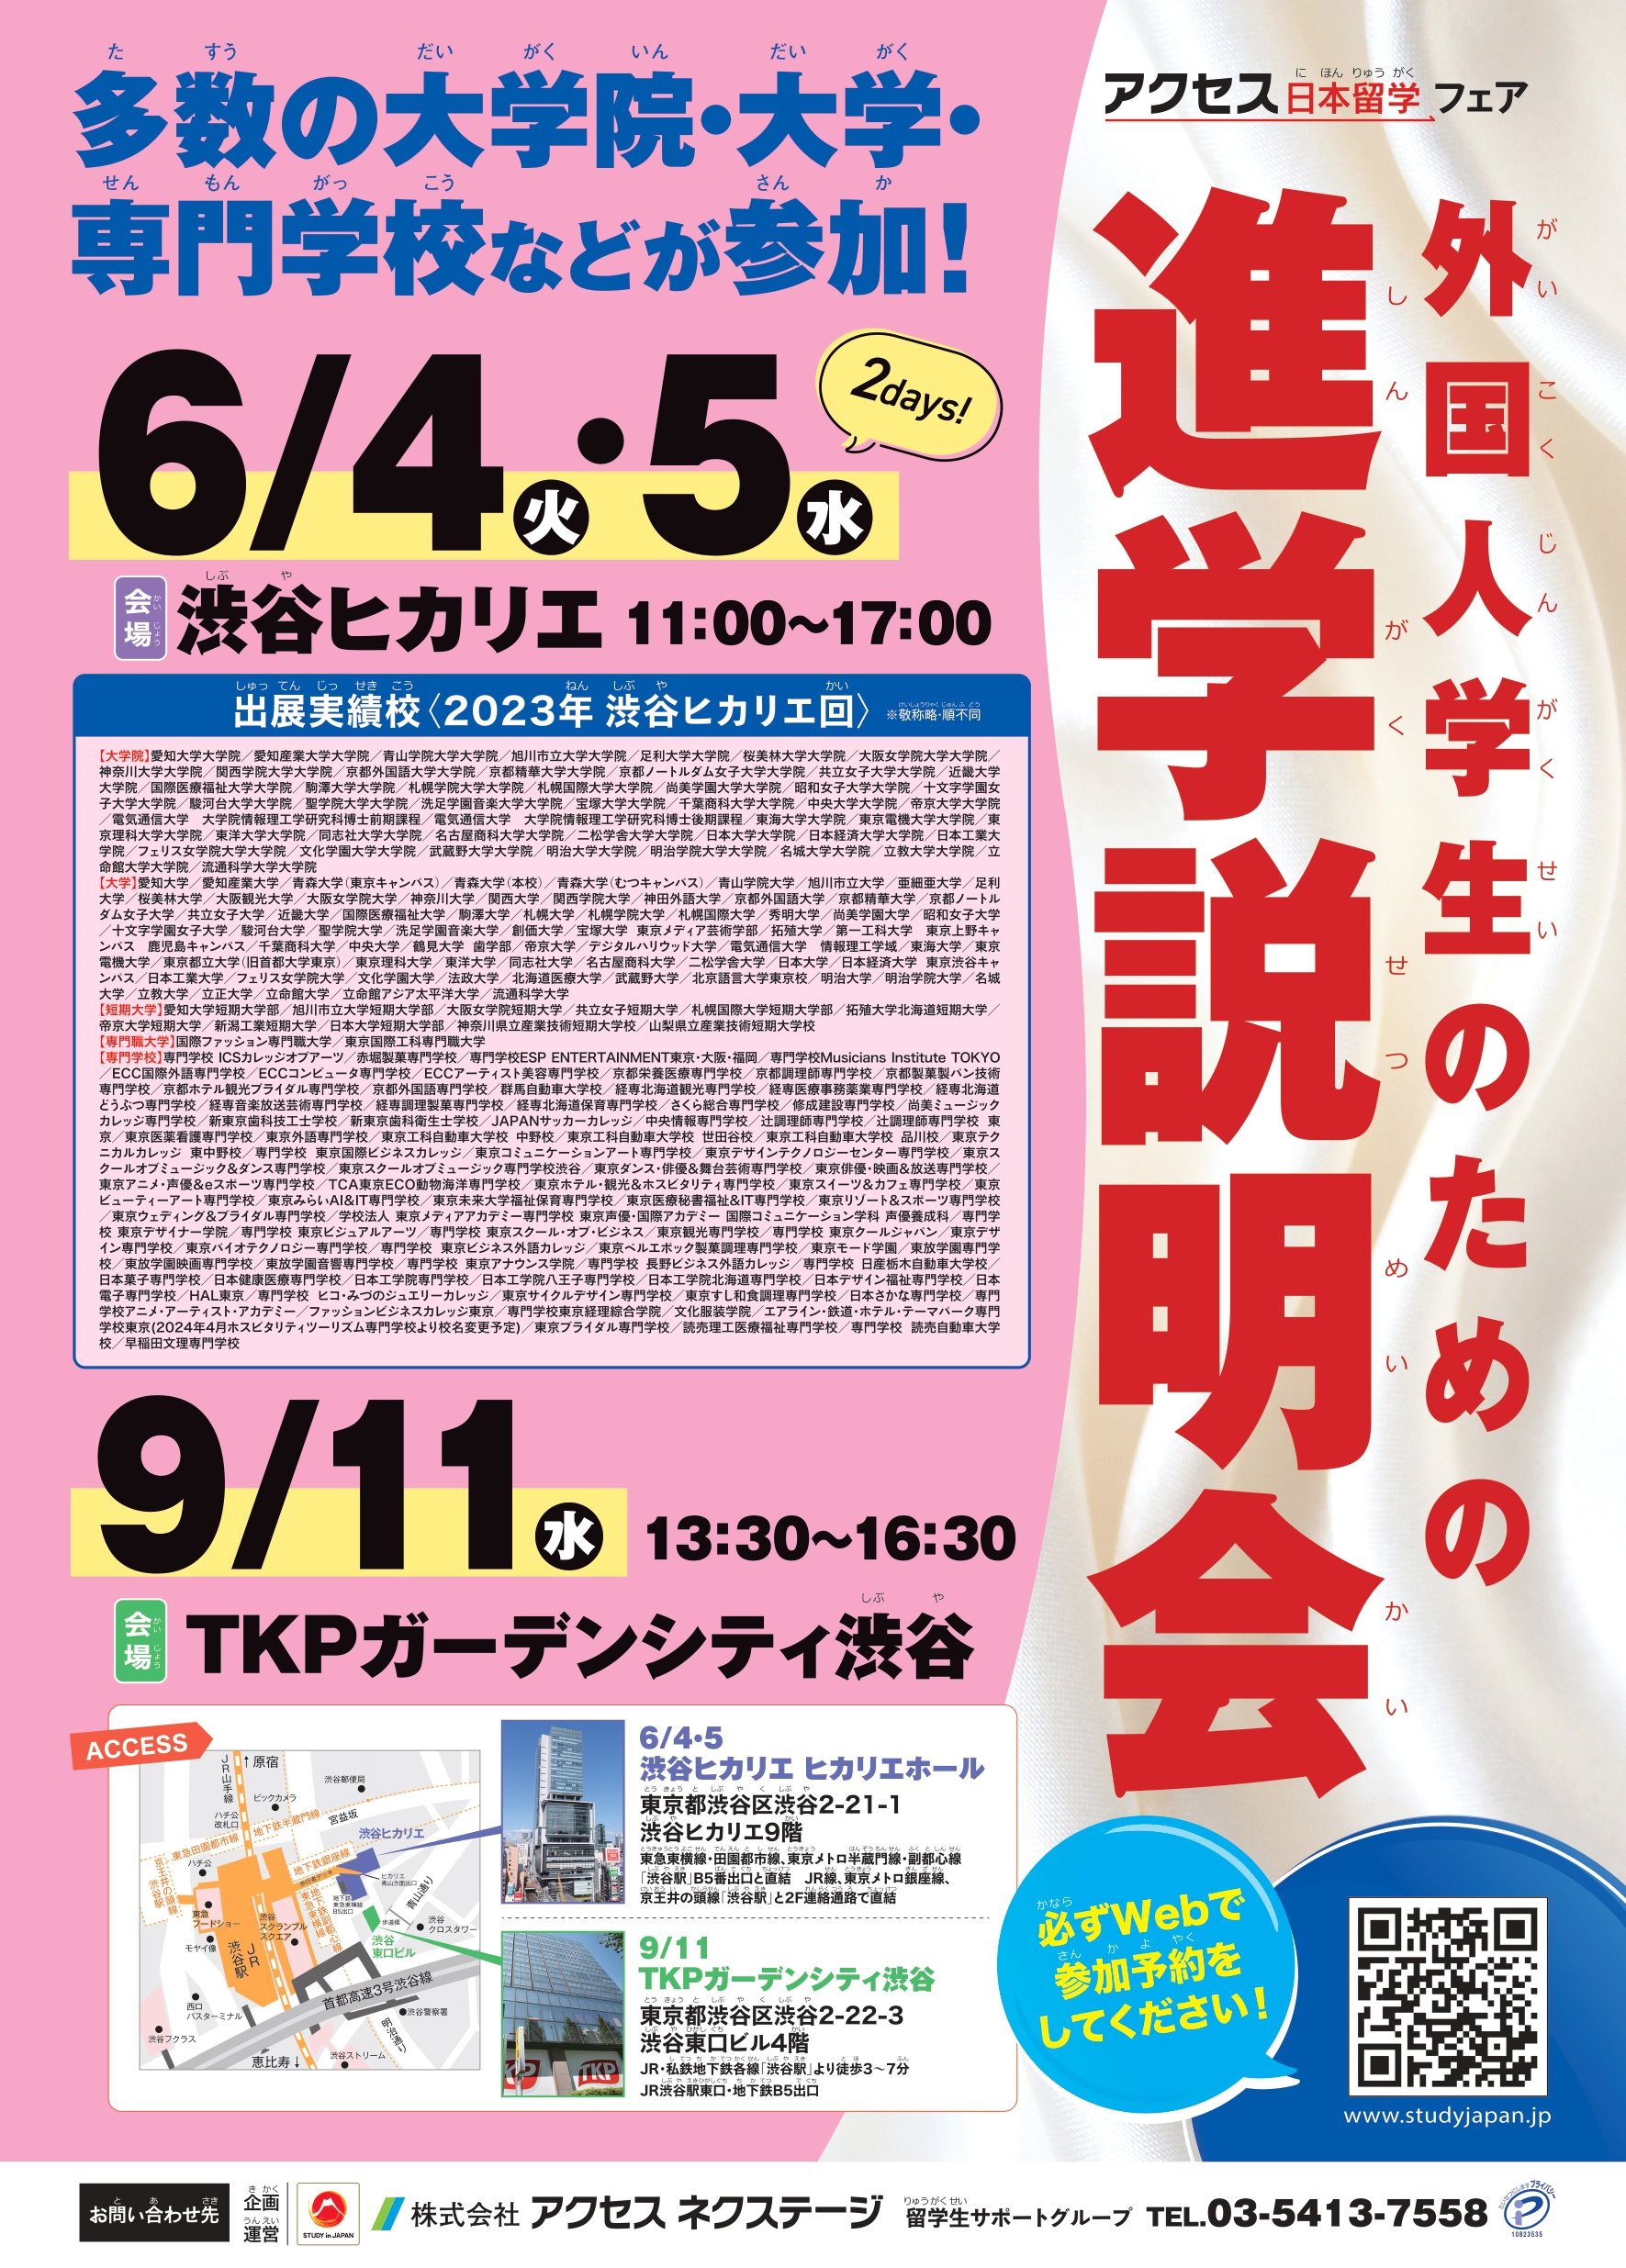 [Hikarie] Các buổi hướng dẫn về trường học dành cho sinh viên nước ngoài 4 tháng 6 đến ngày 5 tháng 6 năm 2024_Hội trường Shibuya Hikarie